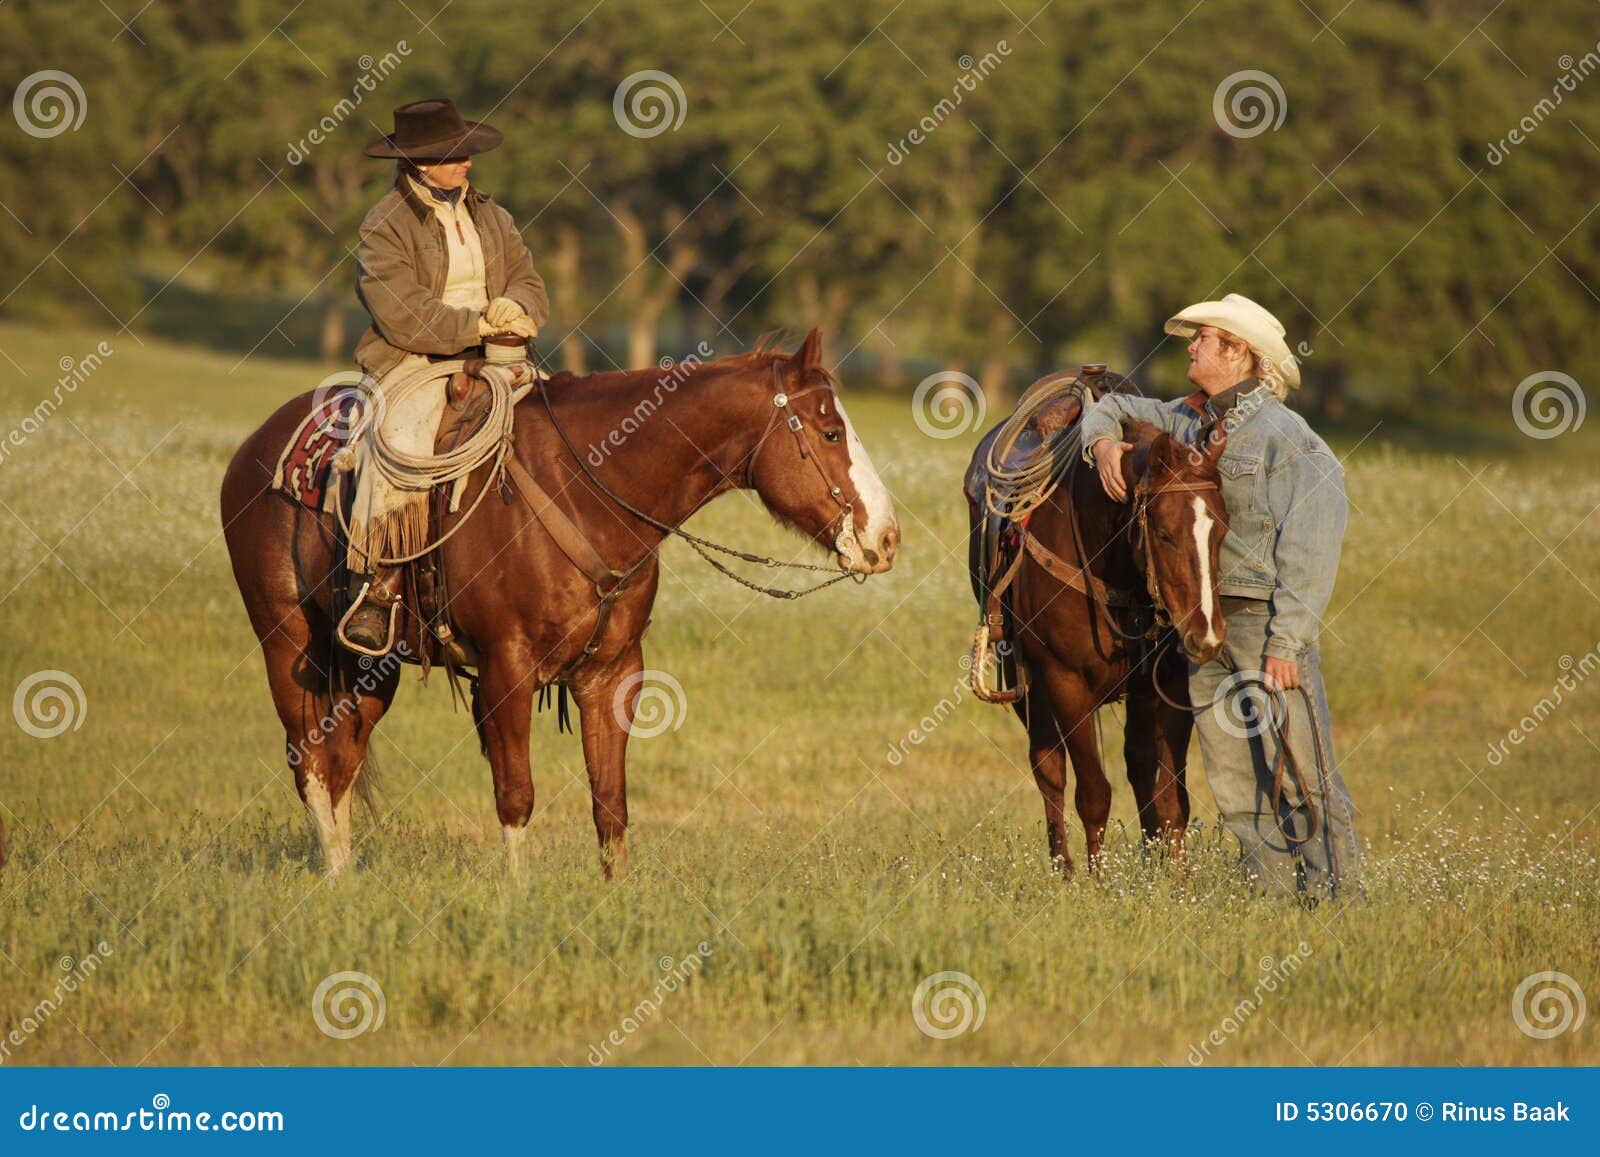 cowboys meeting in meadow